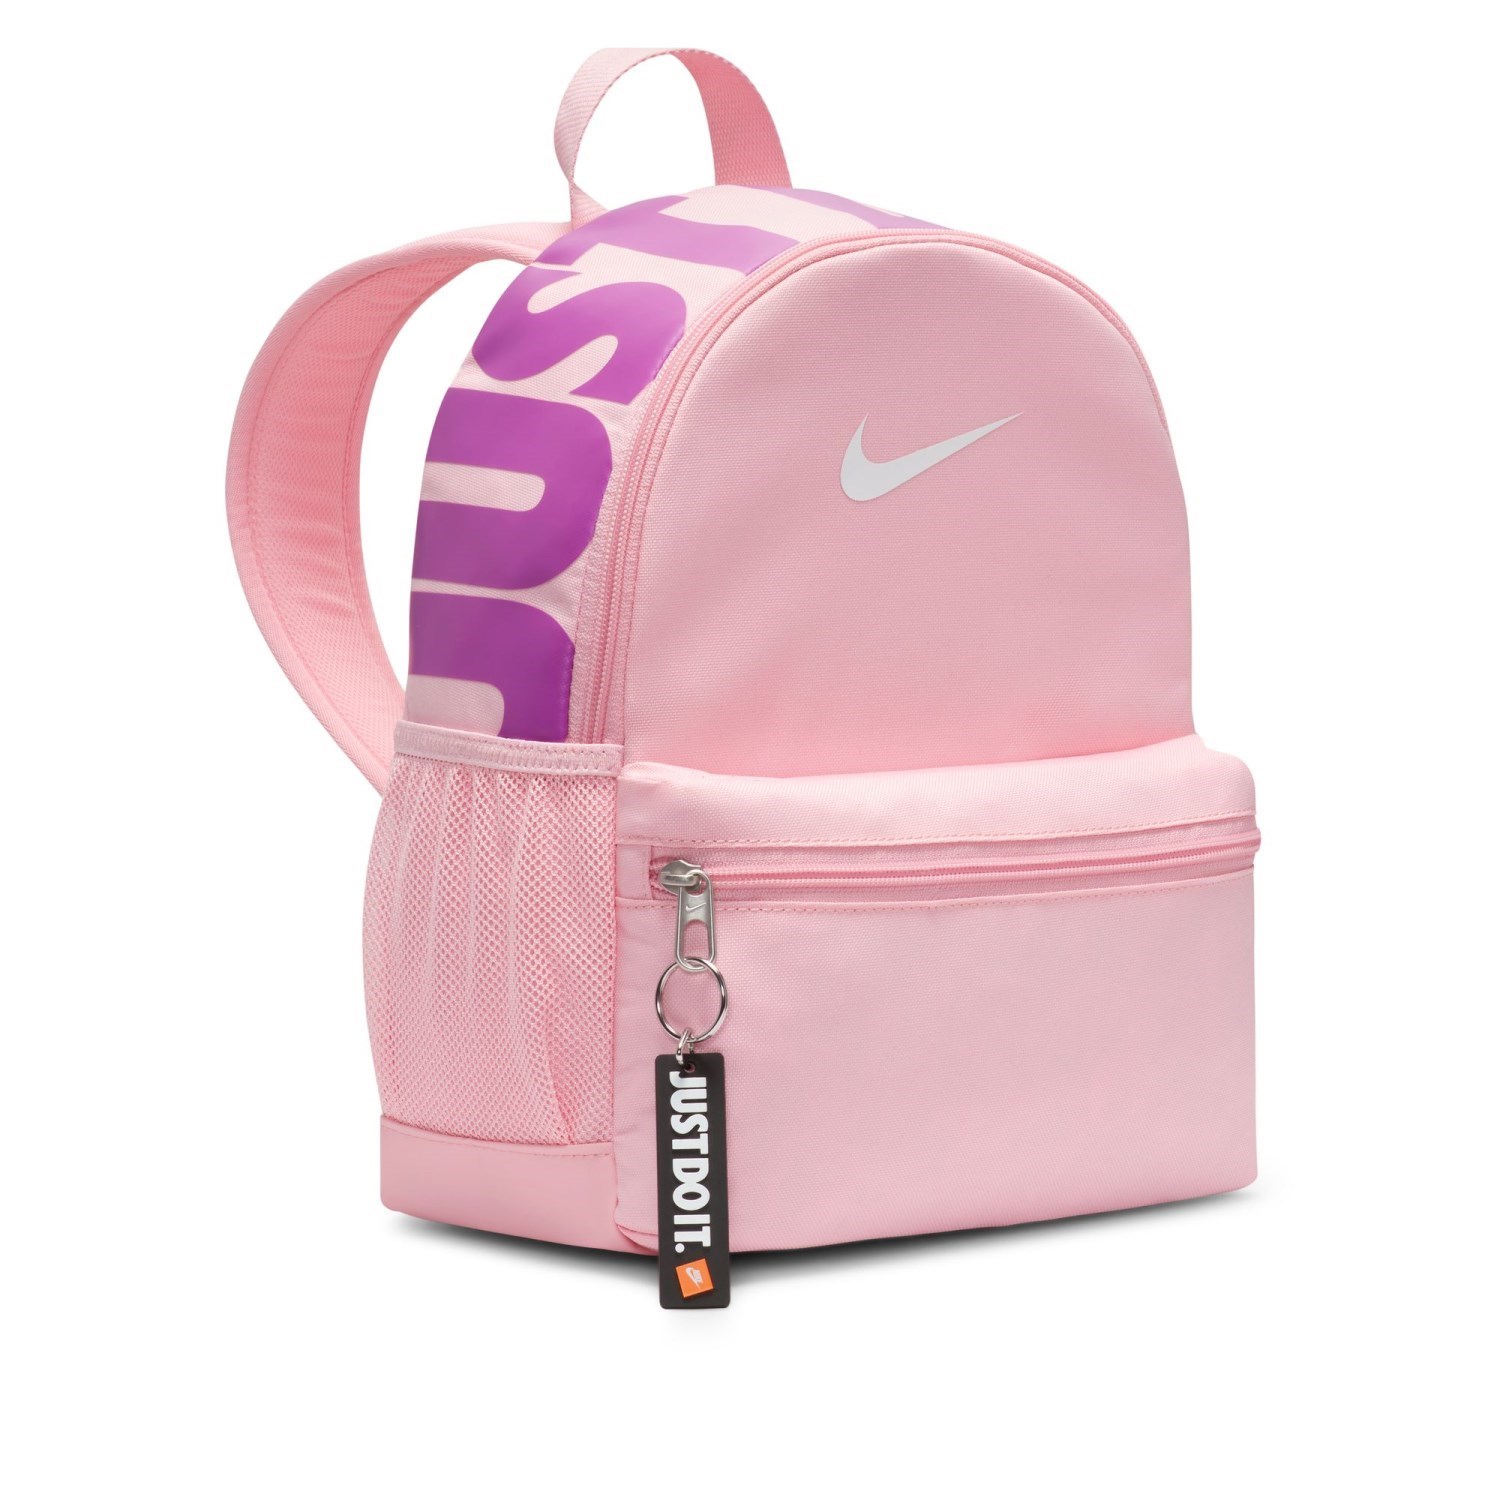 Nike Brasilia JDI Mini Kids Backpack Bag - Med Soft Pink/Fuchsia Dream ...